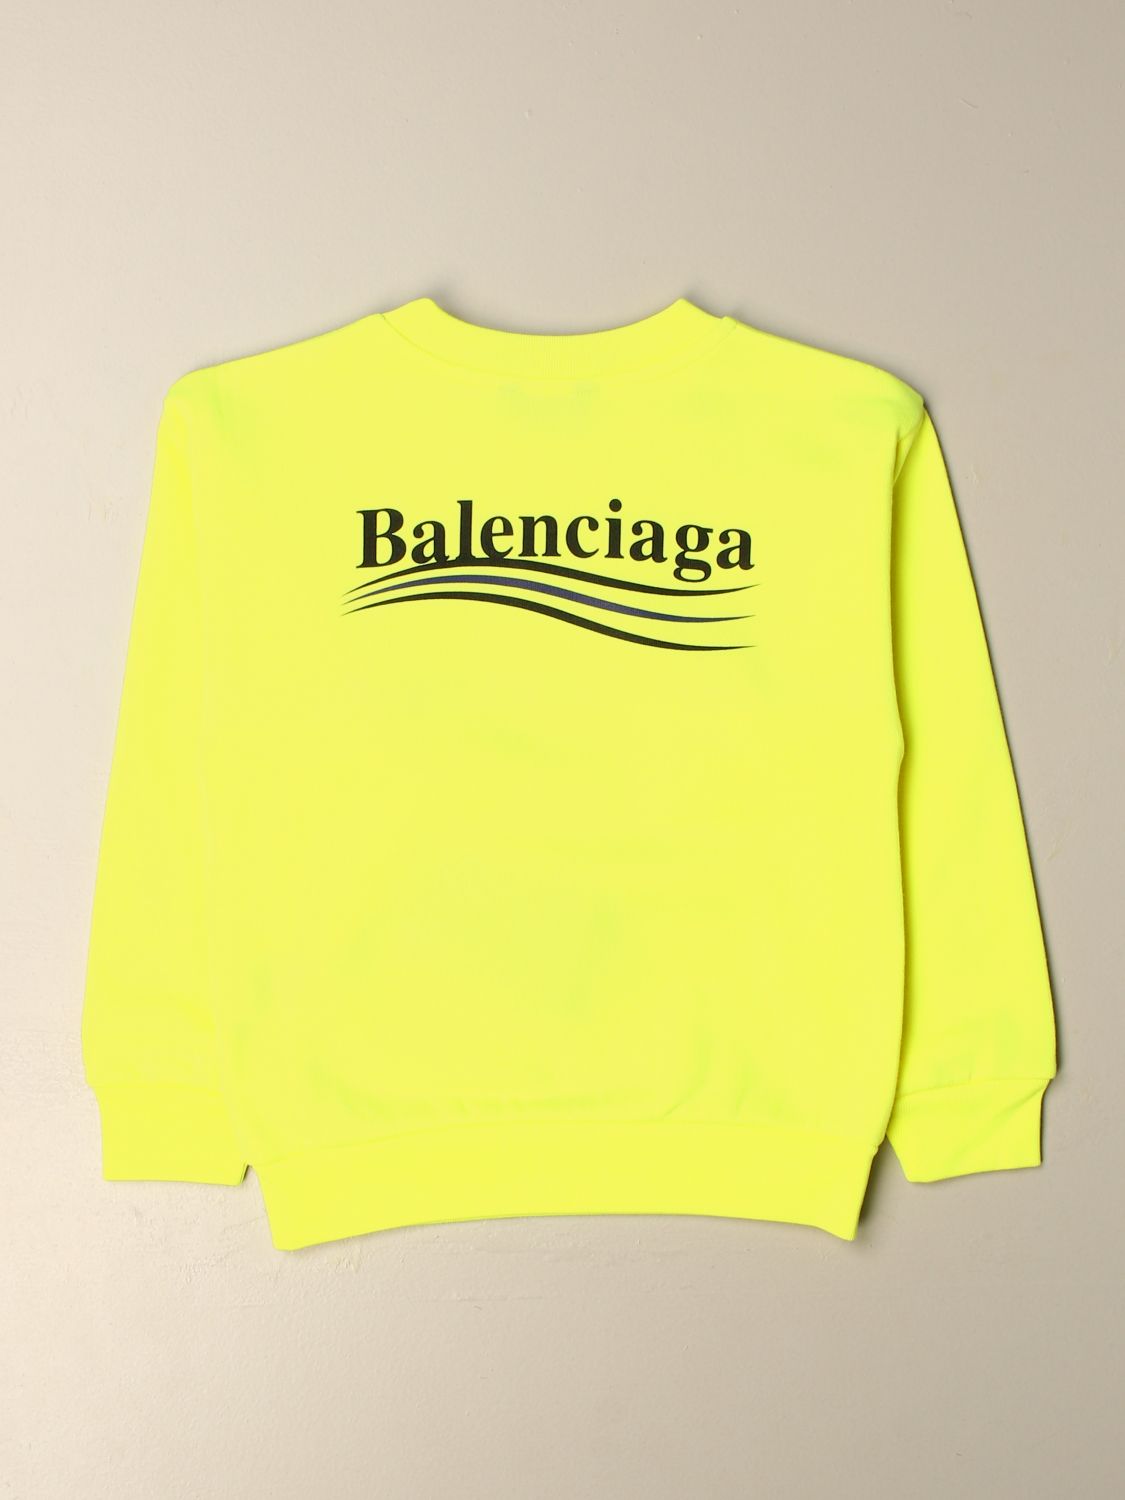 balenciaga yellow sweatshirt